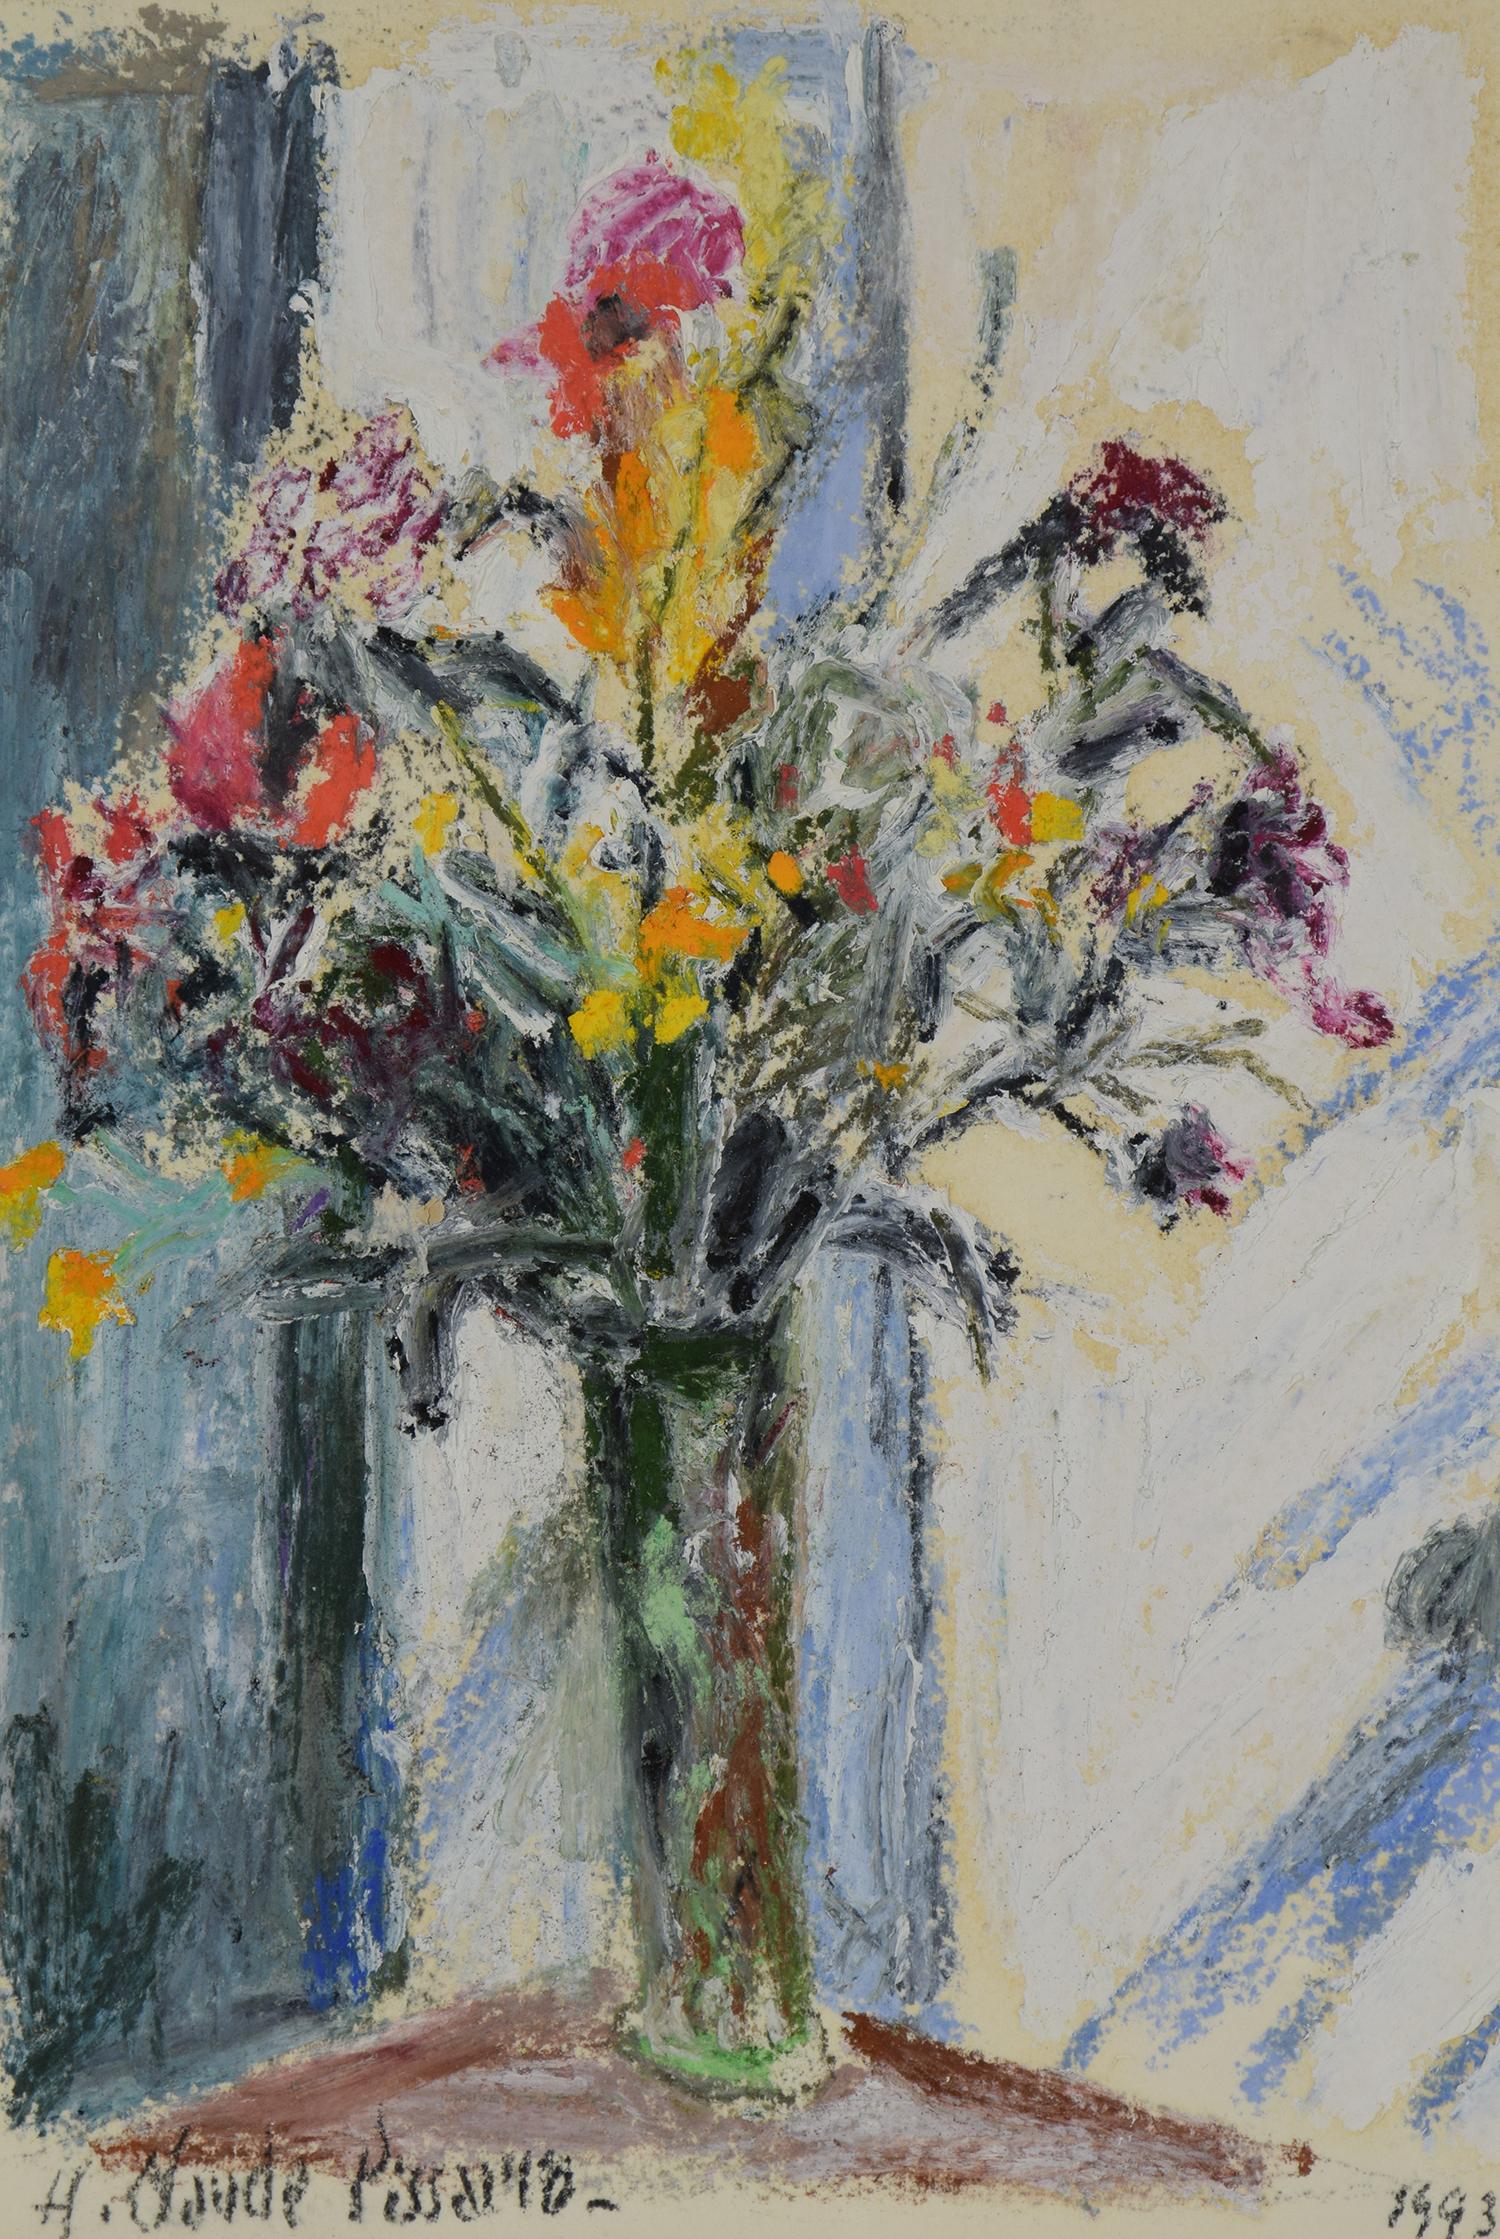 Hughes Claude Pissarro Still-Life Painting – Fleurs von Hugues Pissarro dit Pomié - Zeitgenössische Blumenmalerei